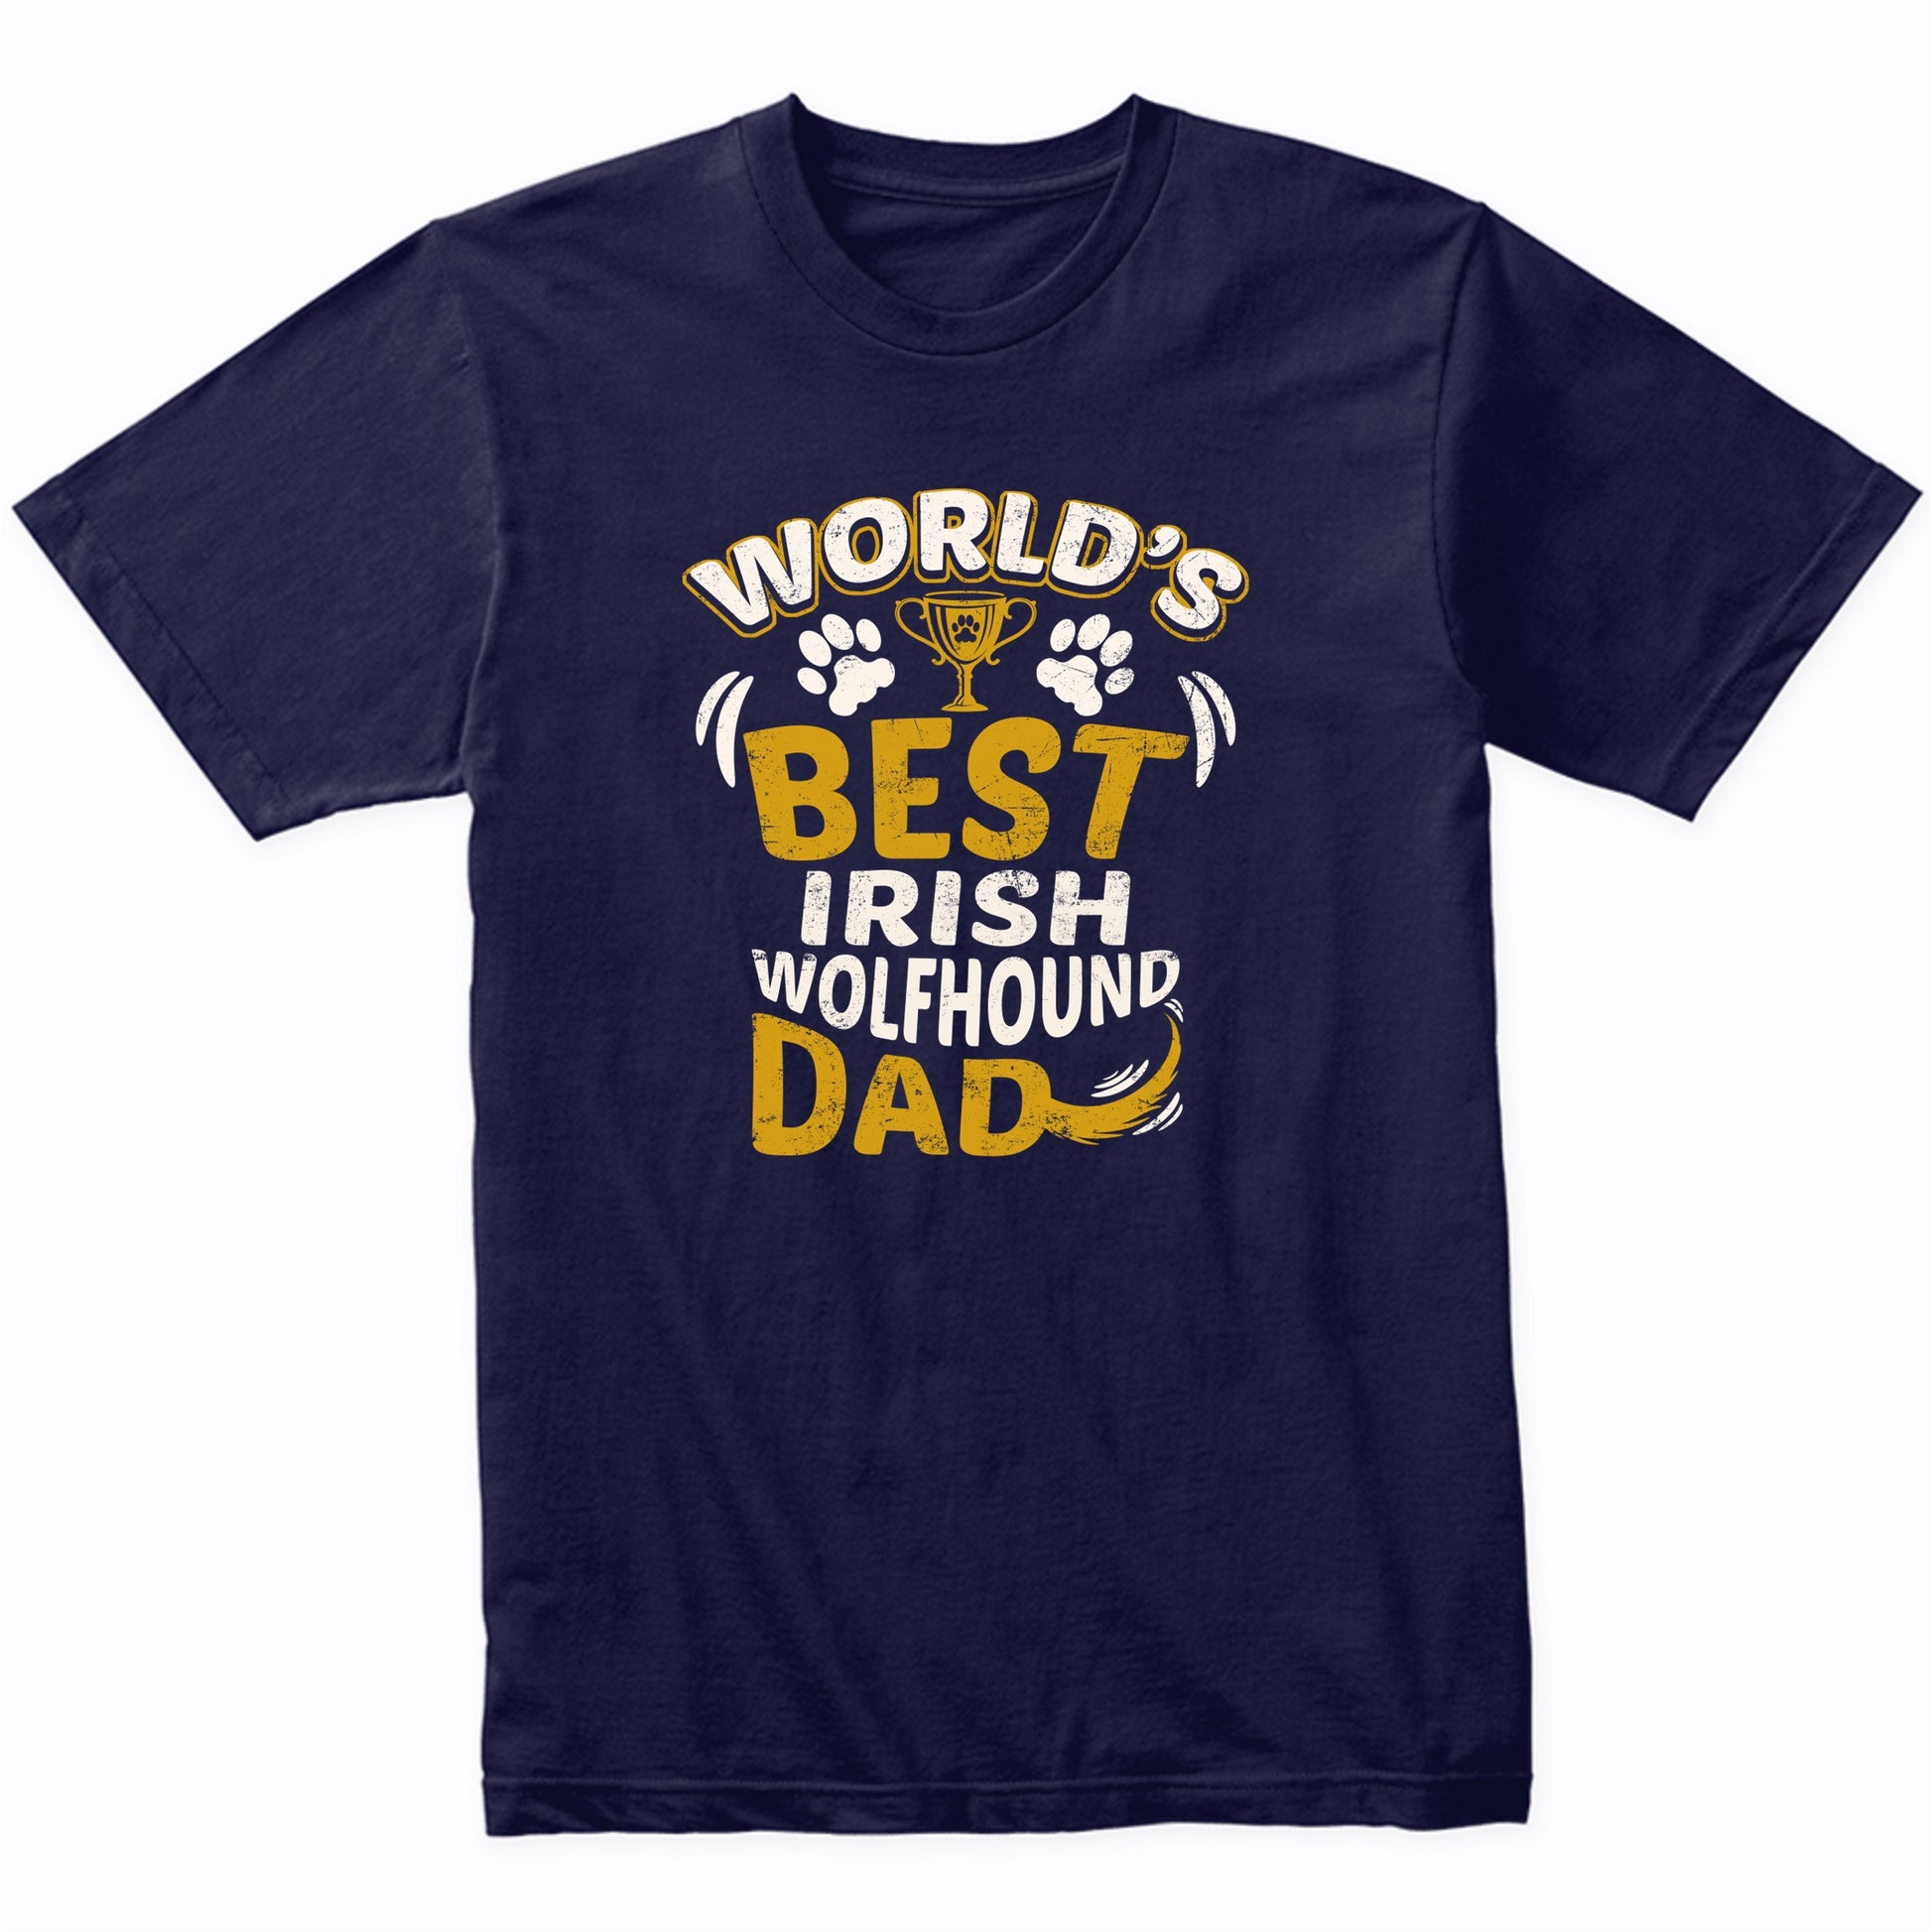 World's Best Irish Wolfhound Dad Graphic T-Shirt